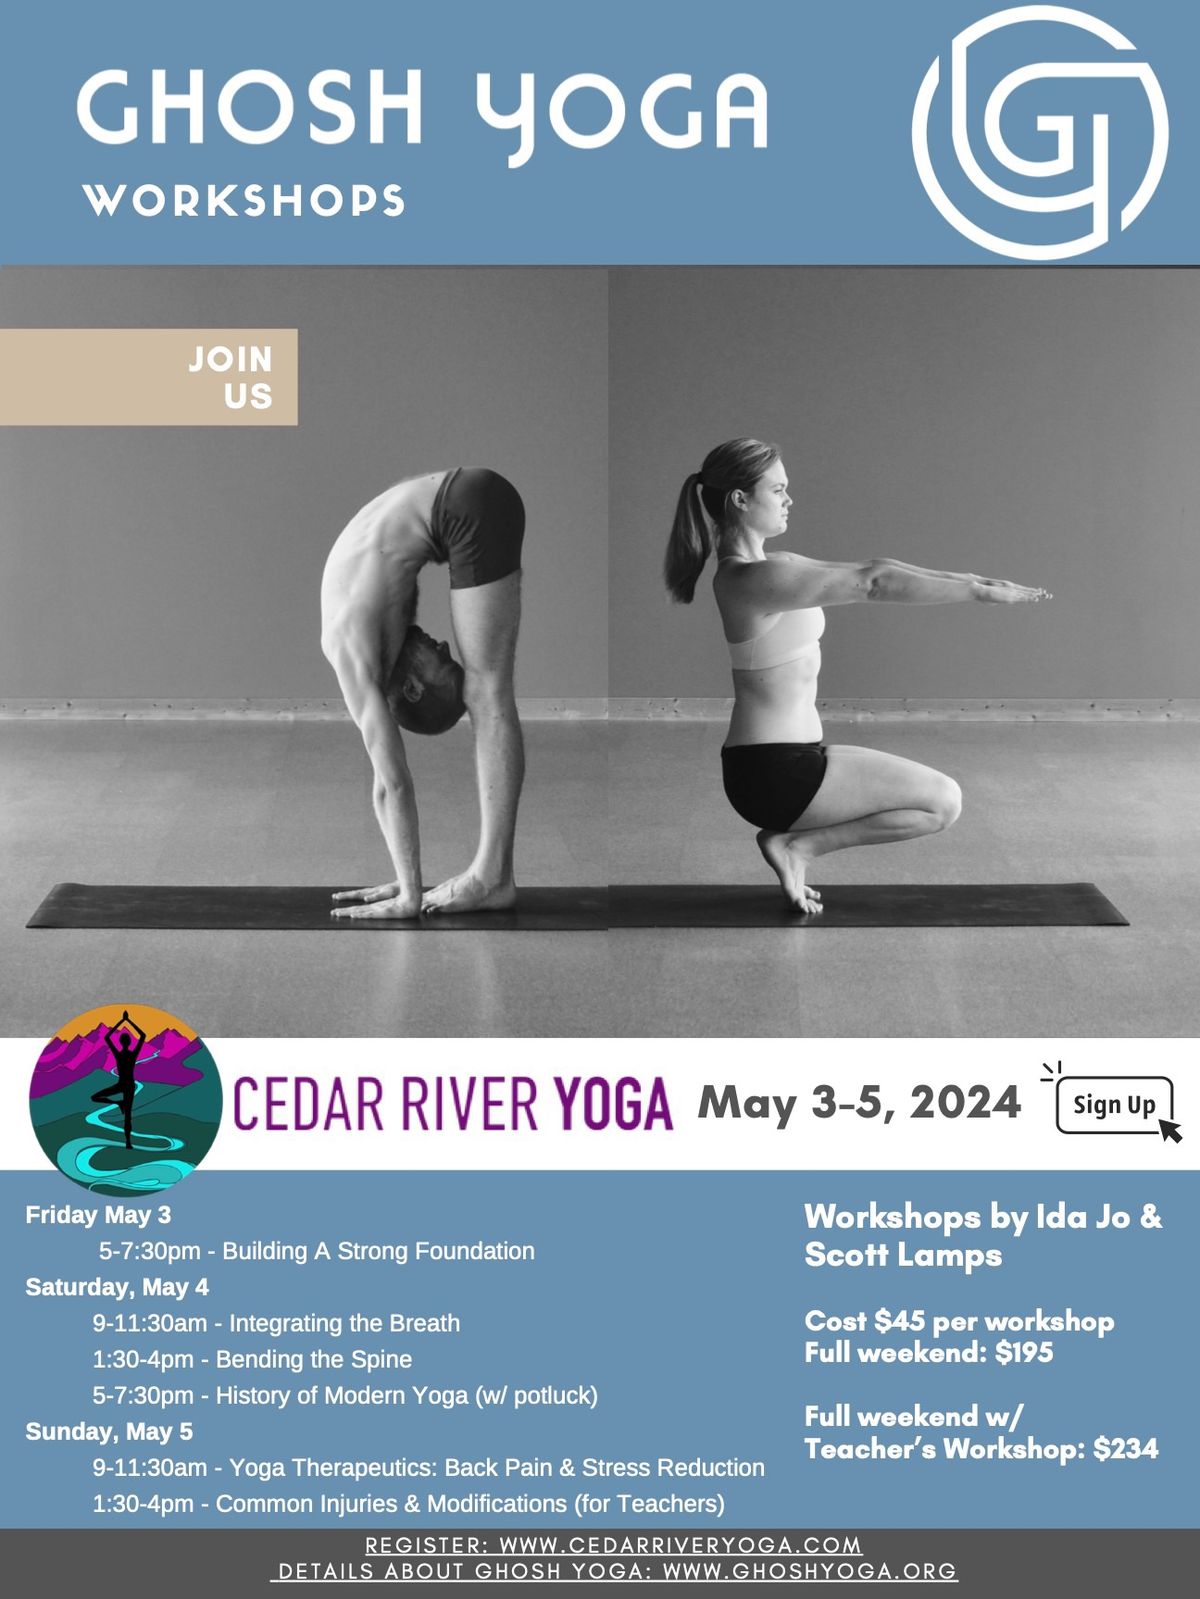 Ghosh Yoga at Cedar River Yoga | WEEKEND IMMERSION